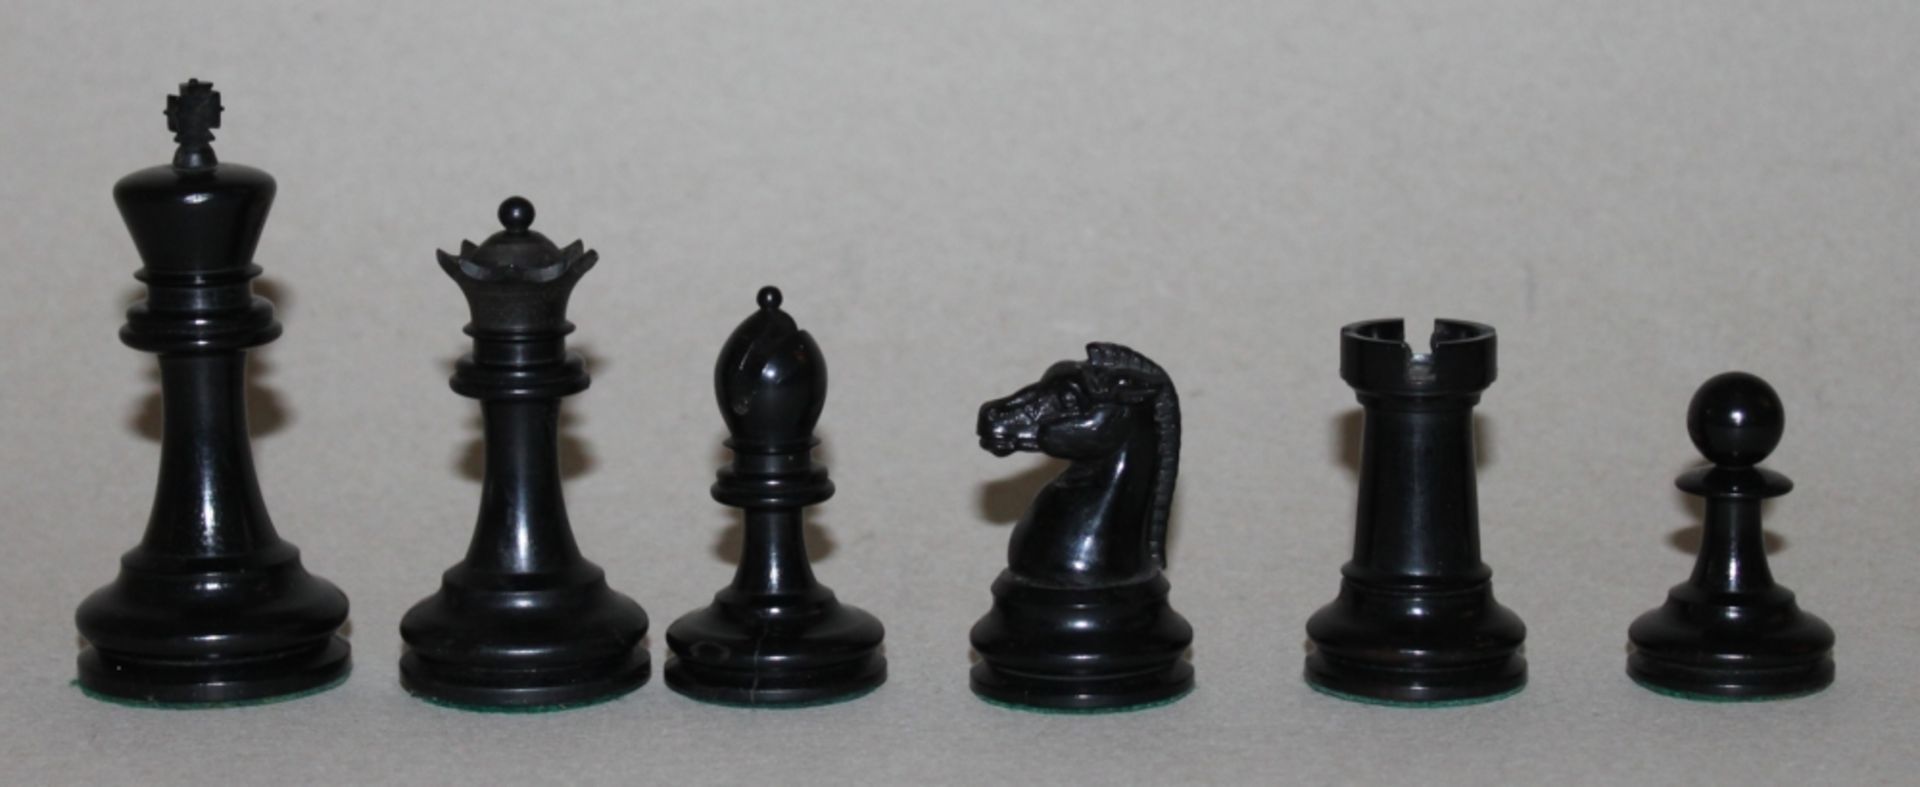 Europa. England. Staunton Schachfiguren aus Holz - Bild 3 aus 5